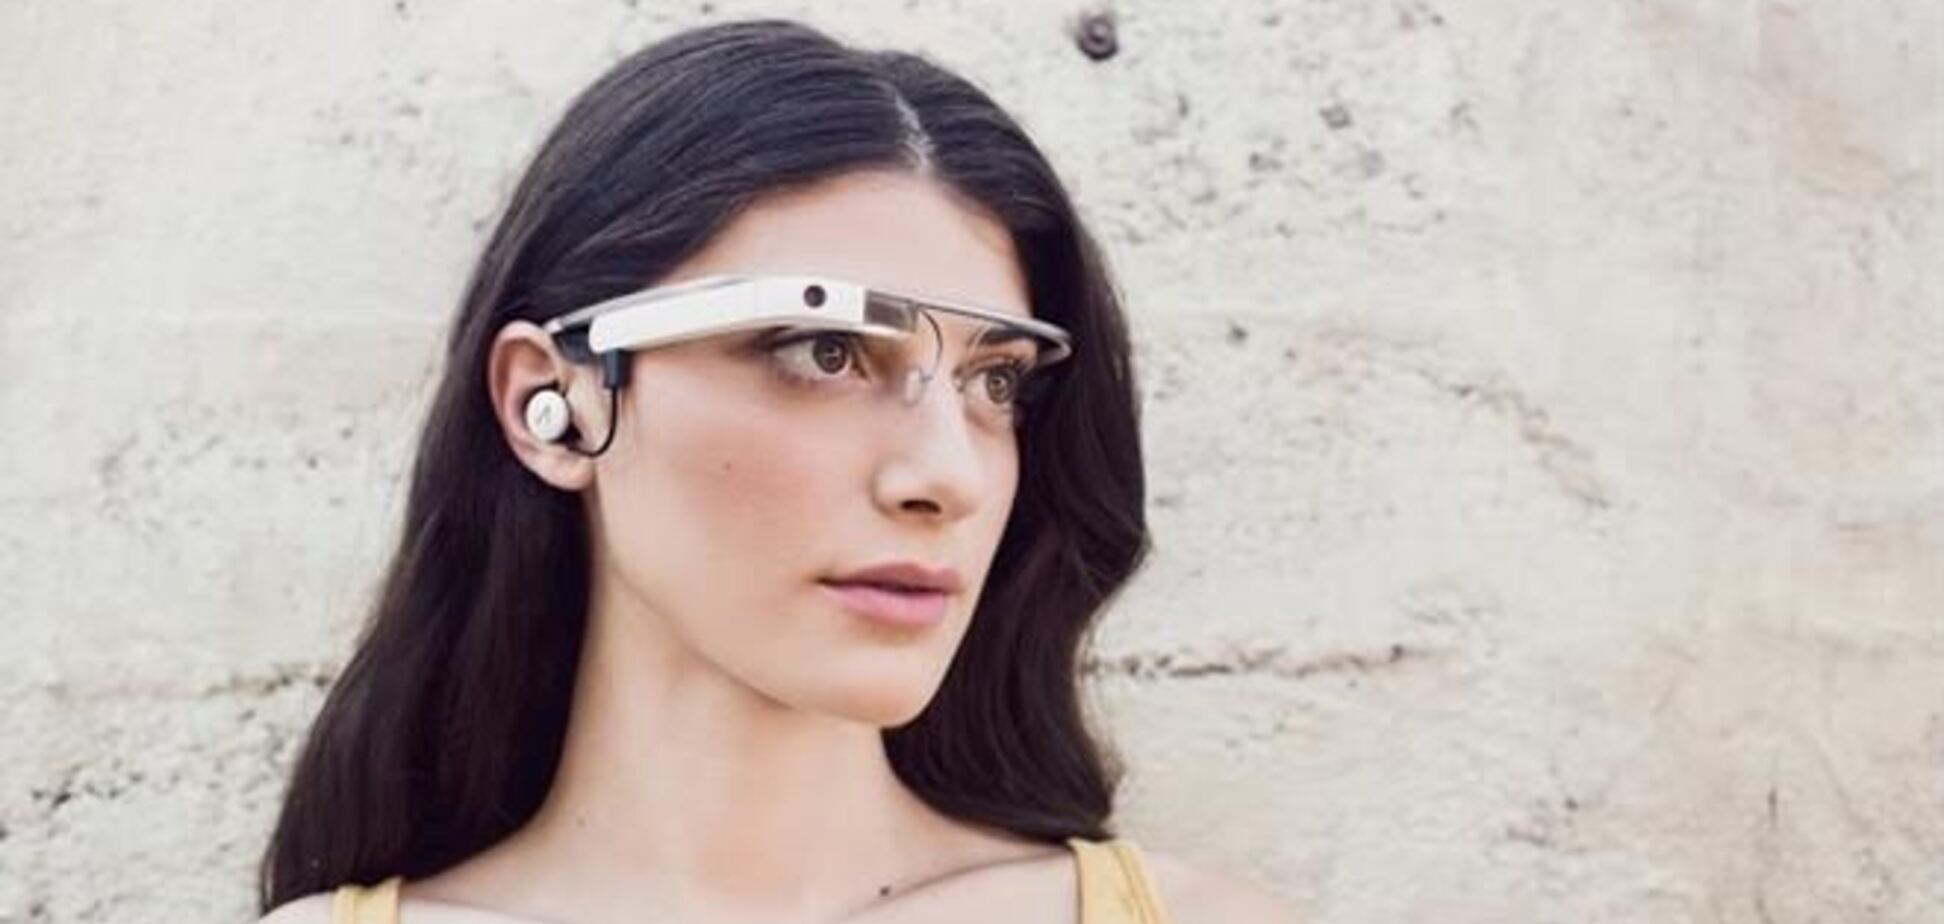 Появилась новая версия очков Google Glass